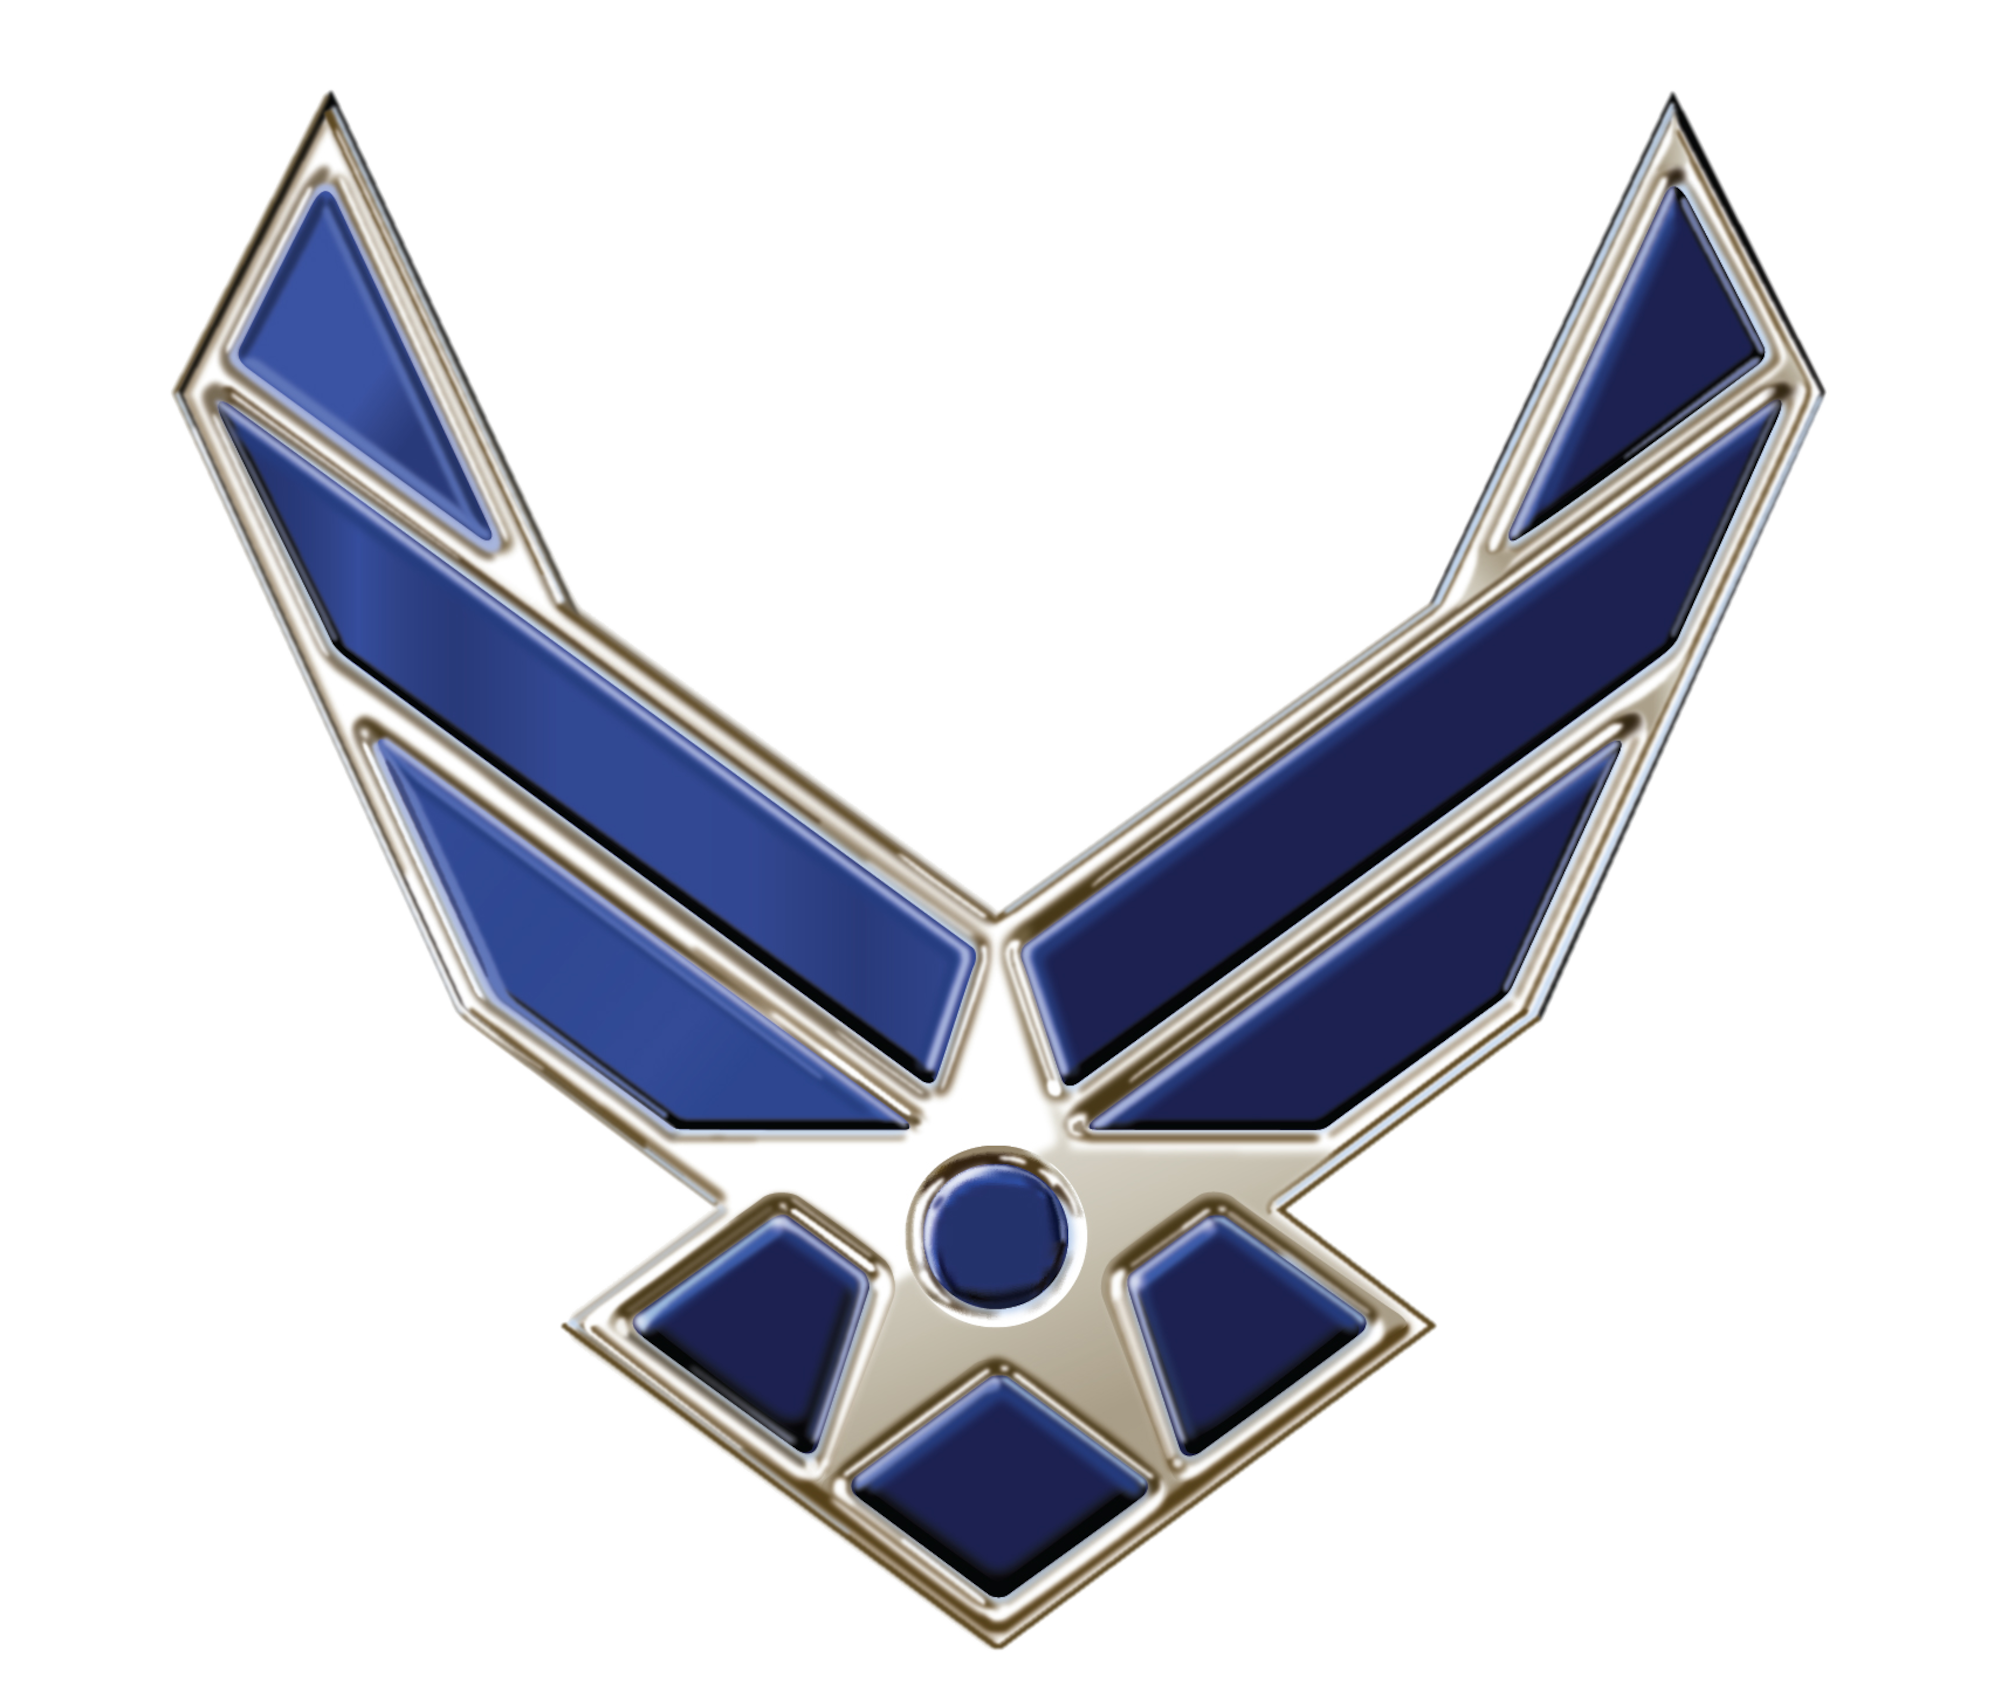 Air Force Wings